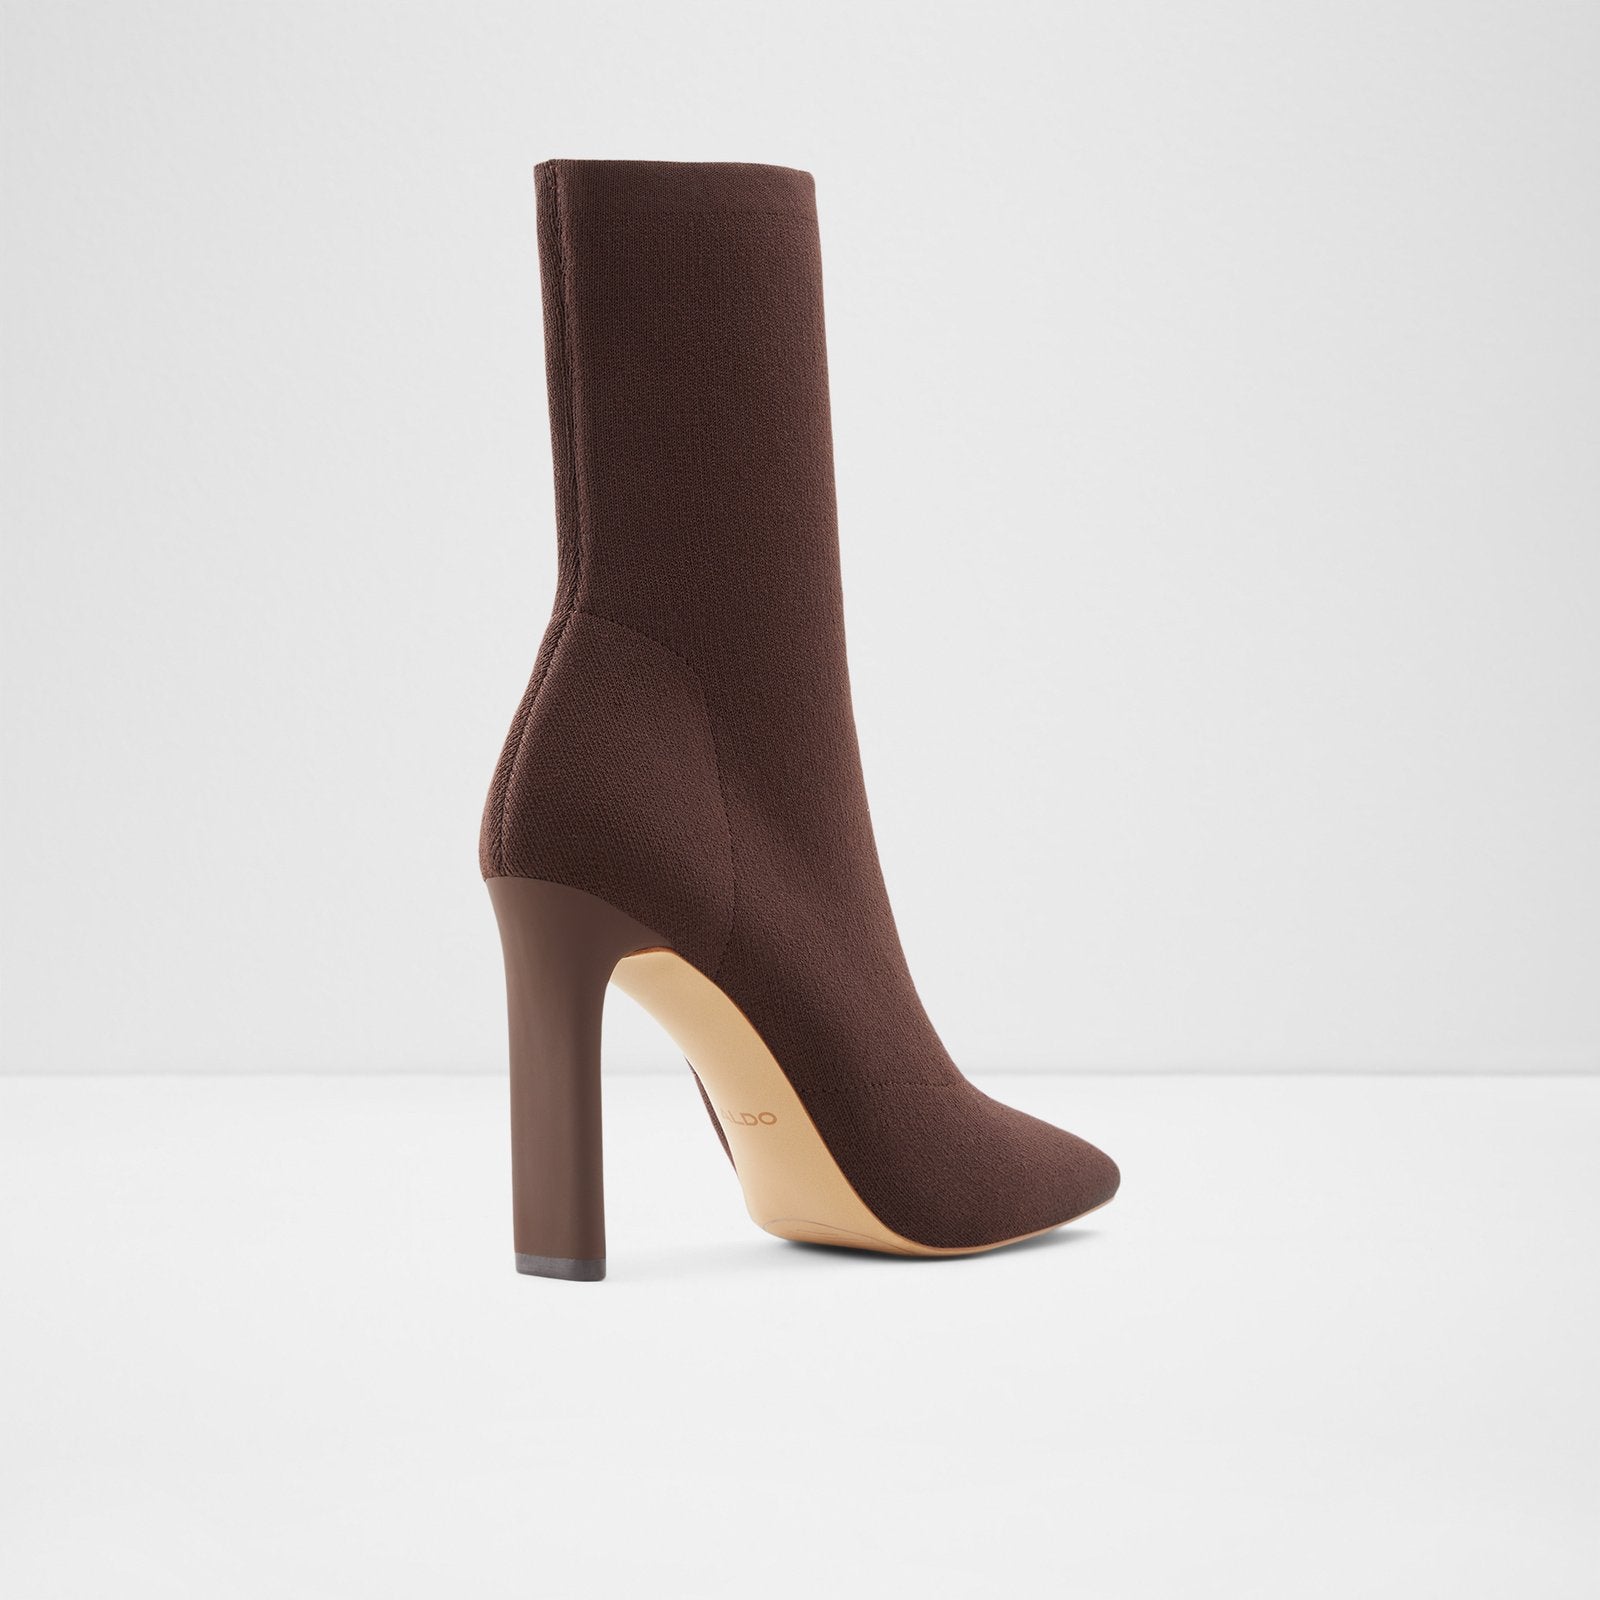 Delylah Women Shoes - Dark Brown - ALDO KSA